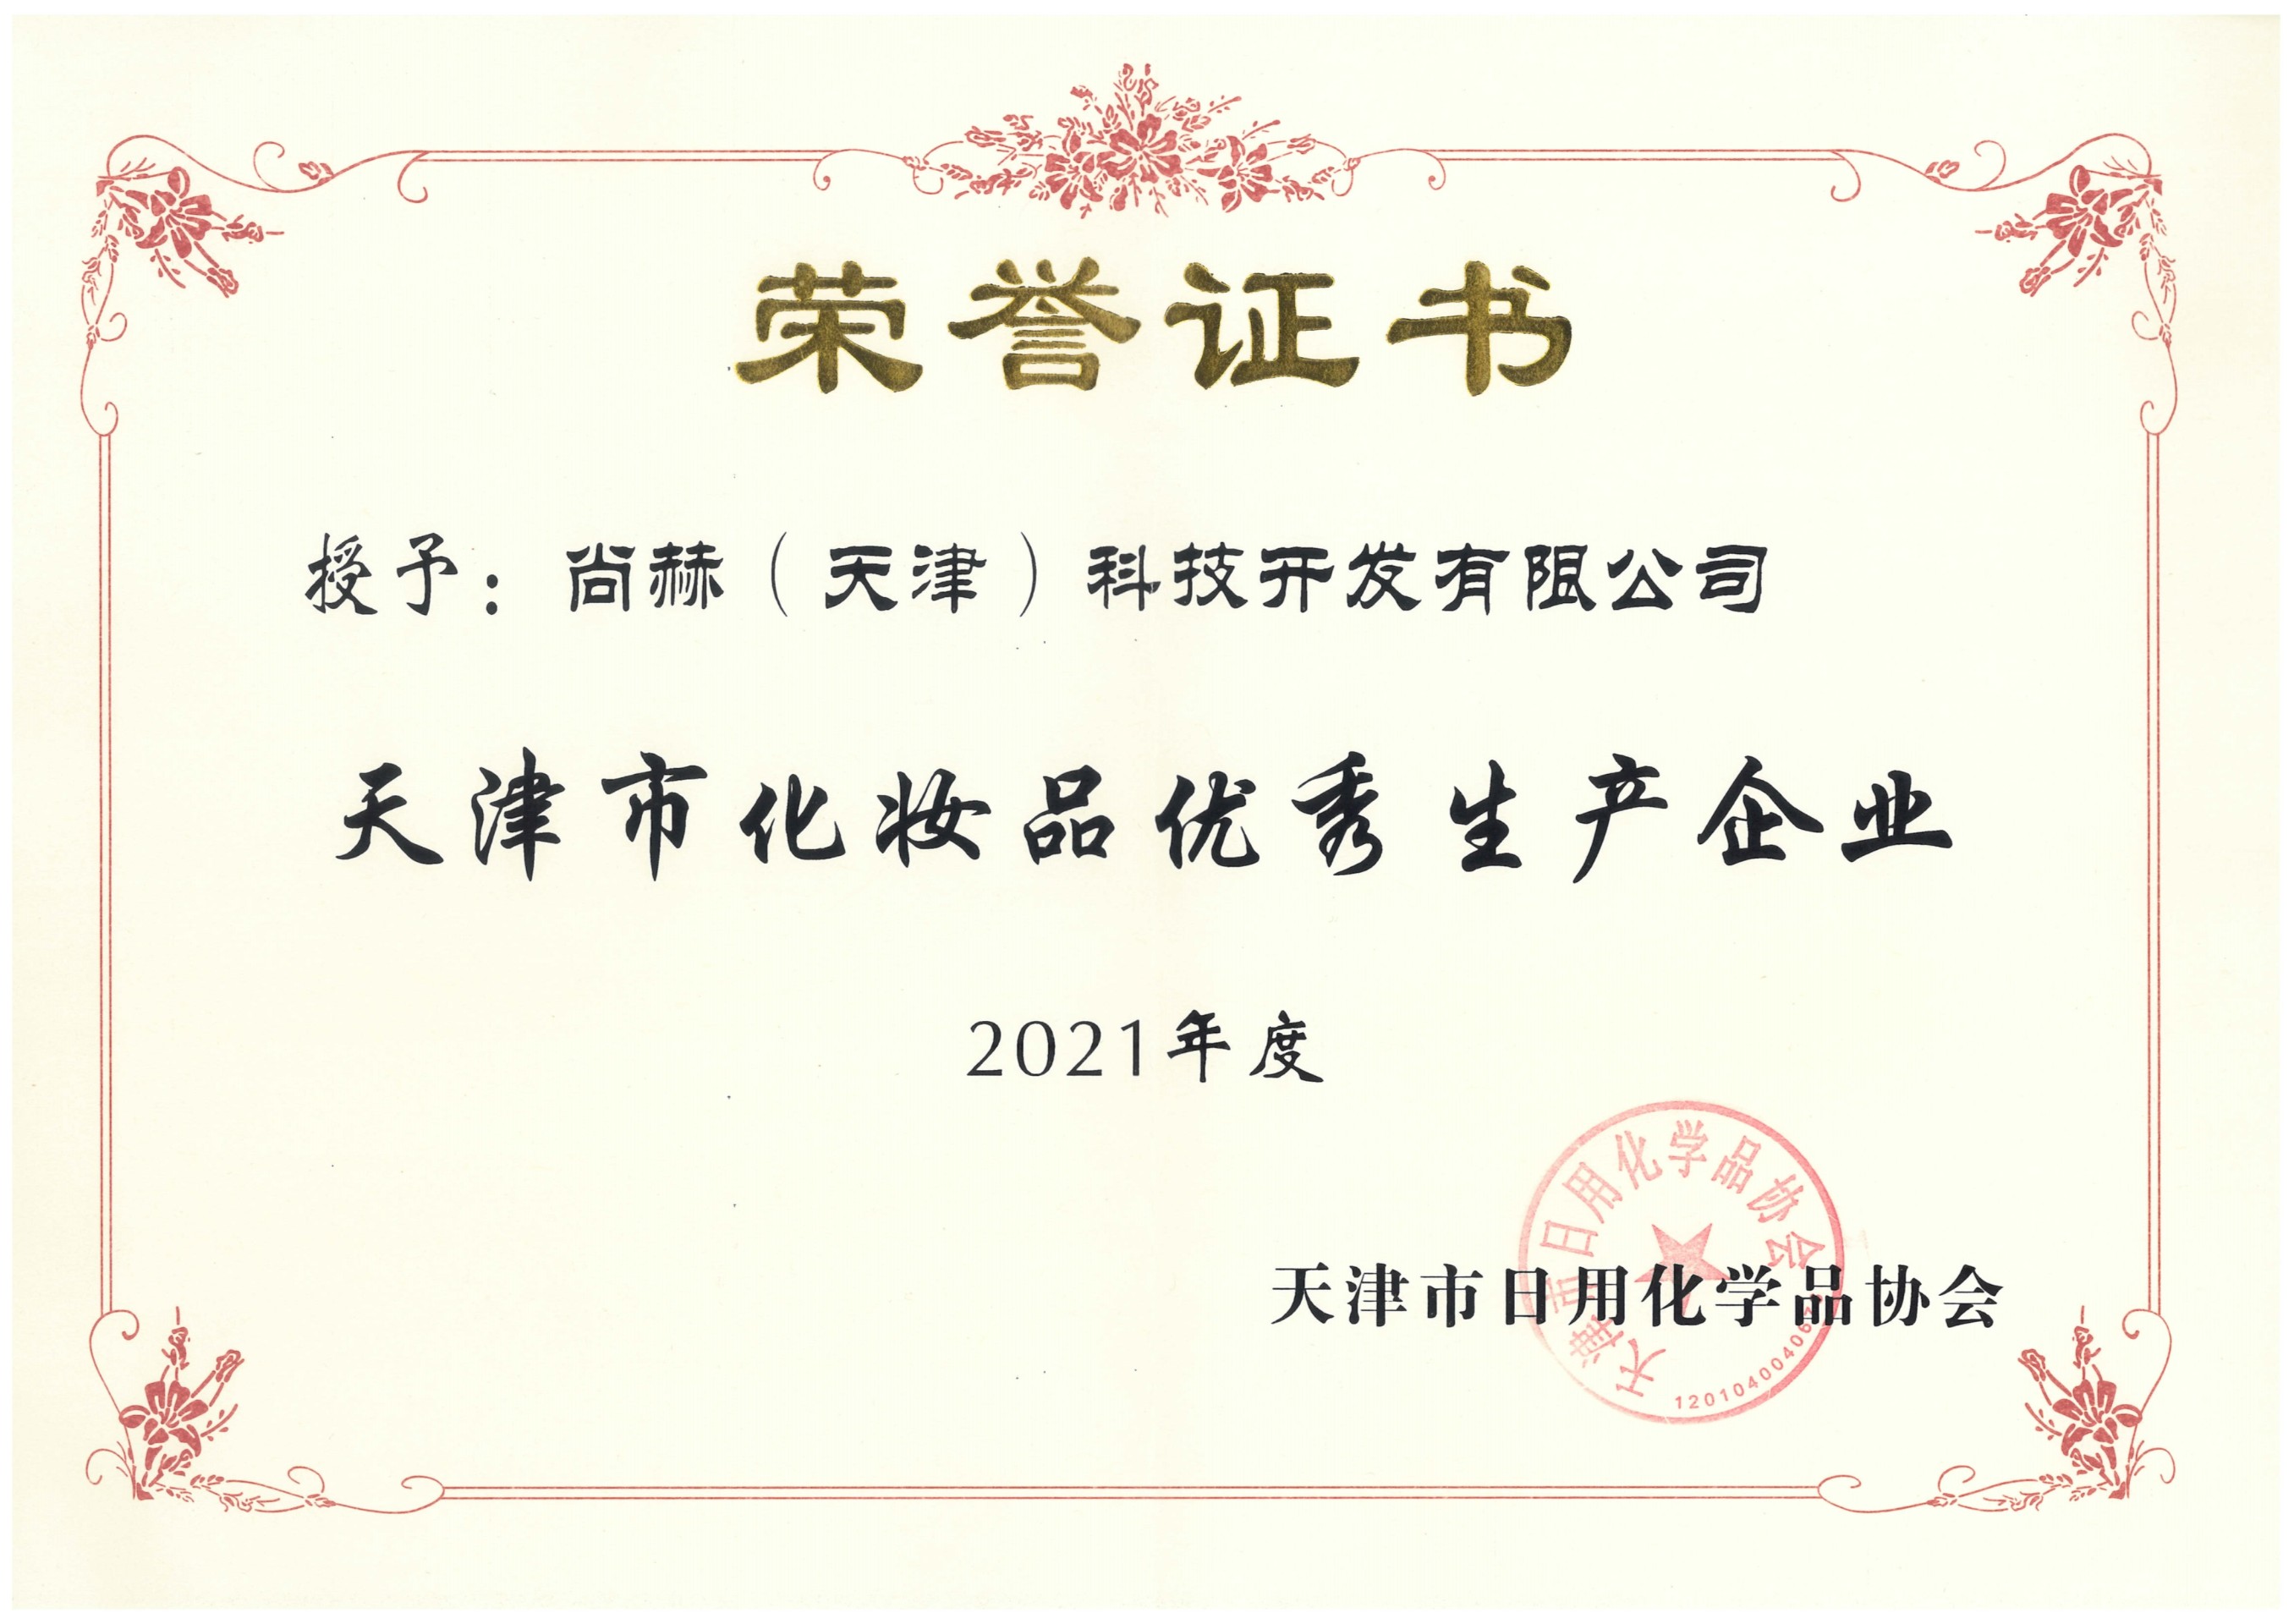 2022年3月-皇家体育(中国)有限责任公司公司荣获-2021年度天津市化妆品优秀生产企业